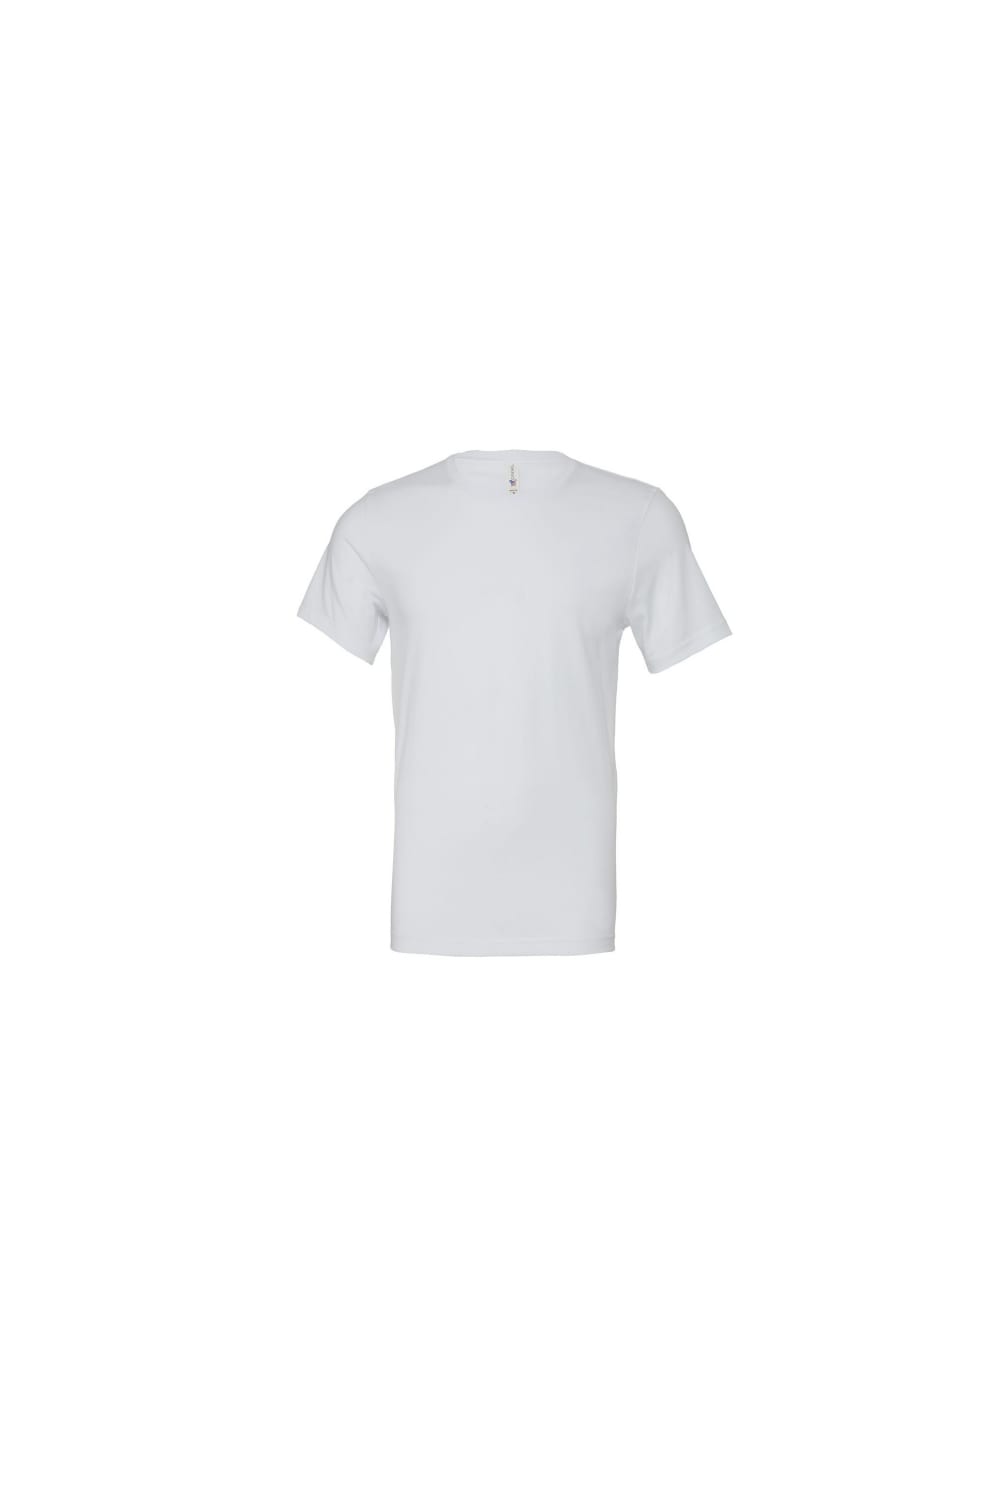 Bella + Canvas Mens Heavyweight T-Shirt (White)